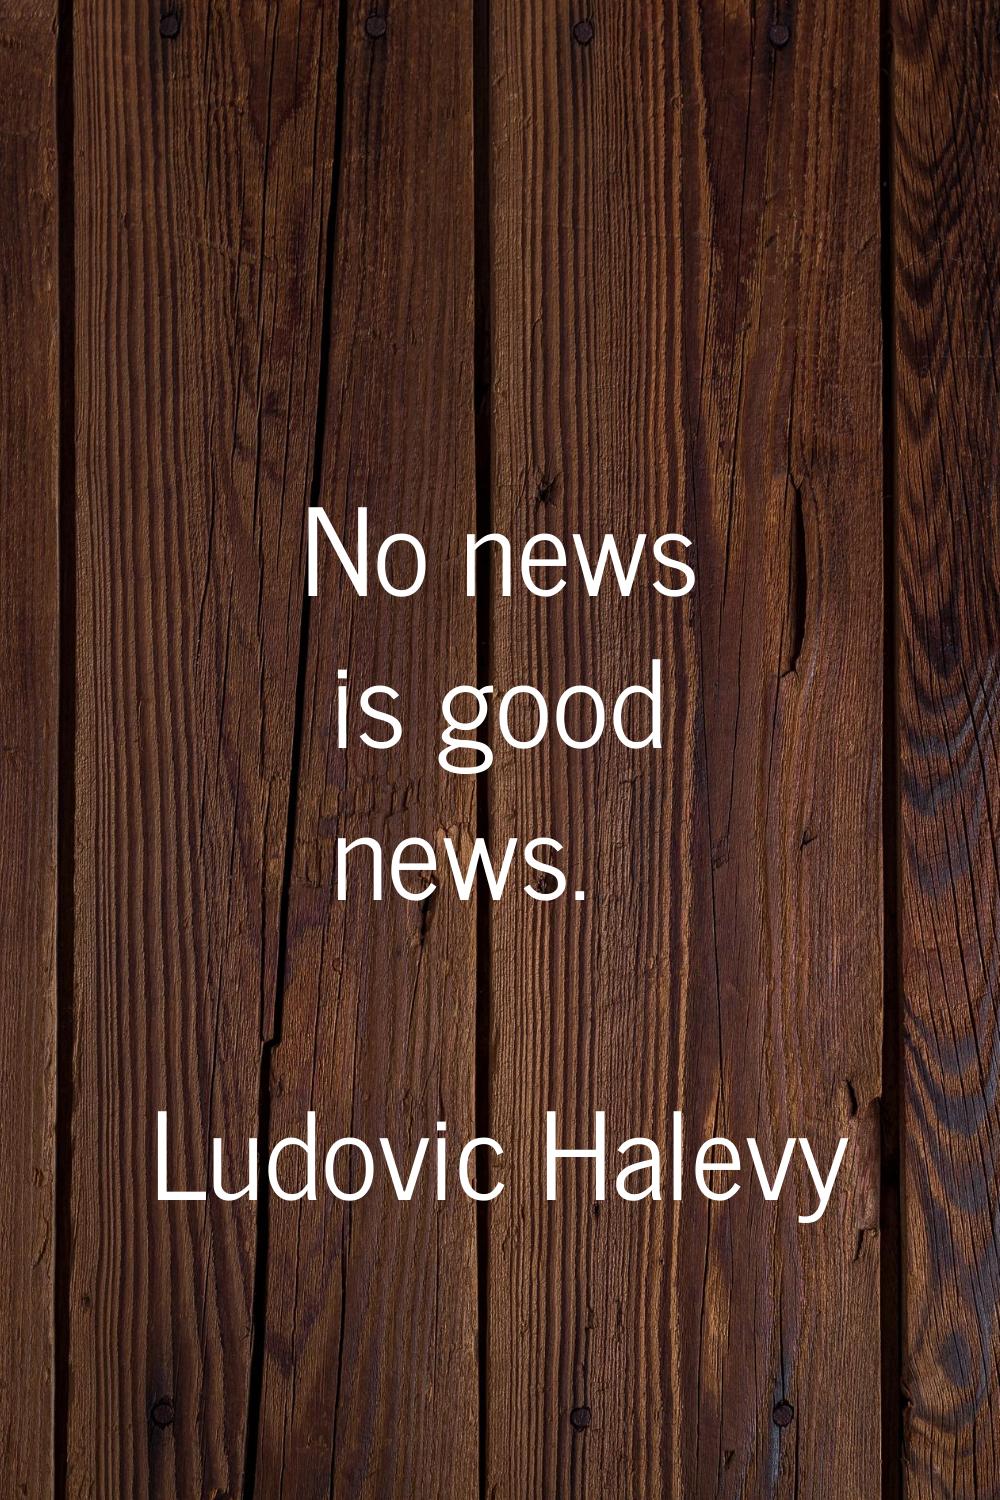 No news is good news.